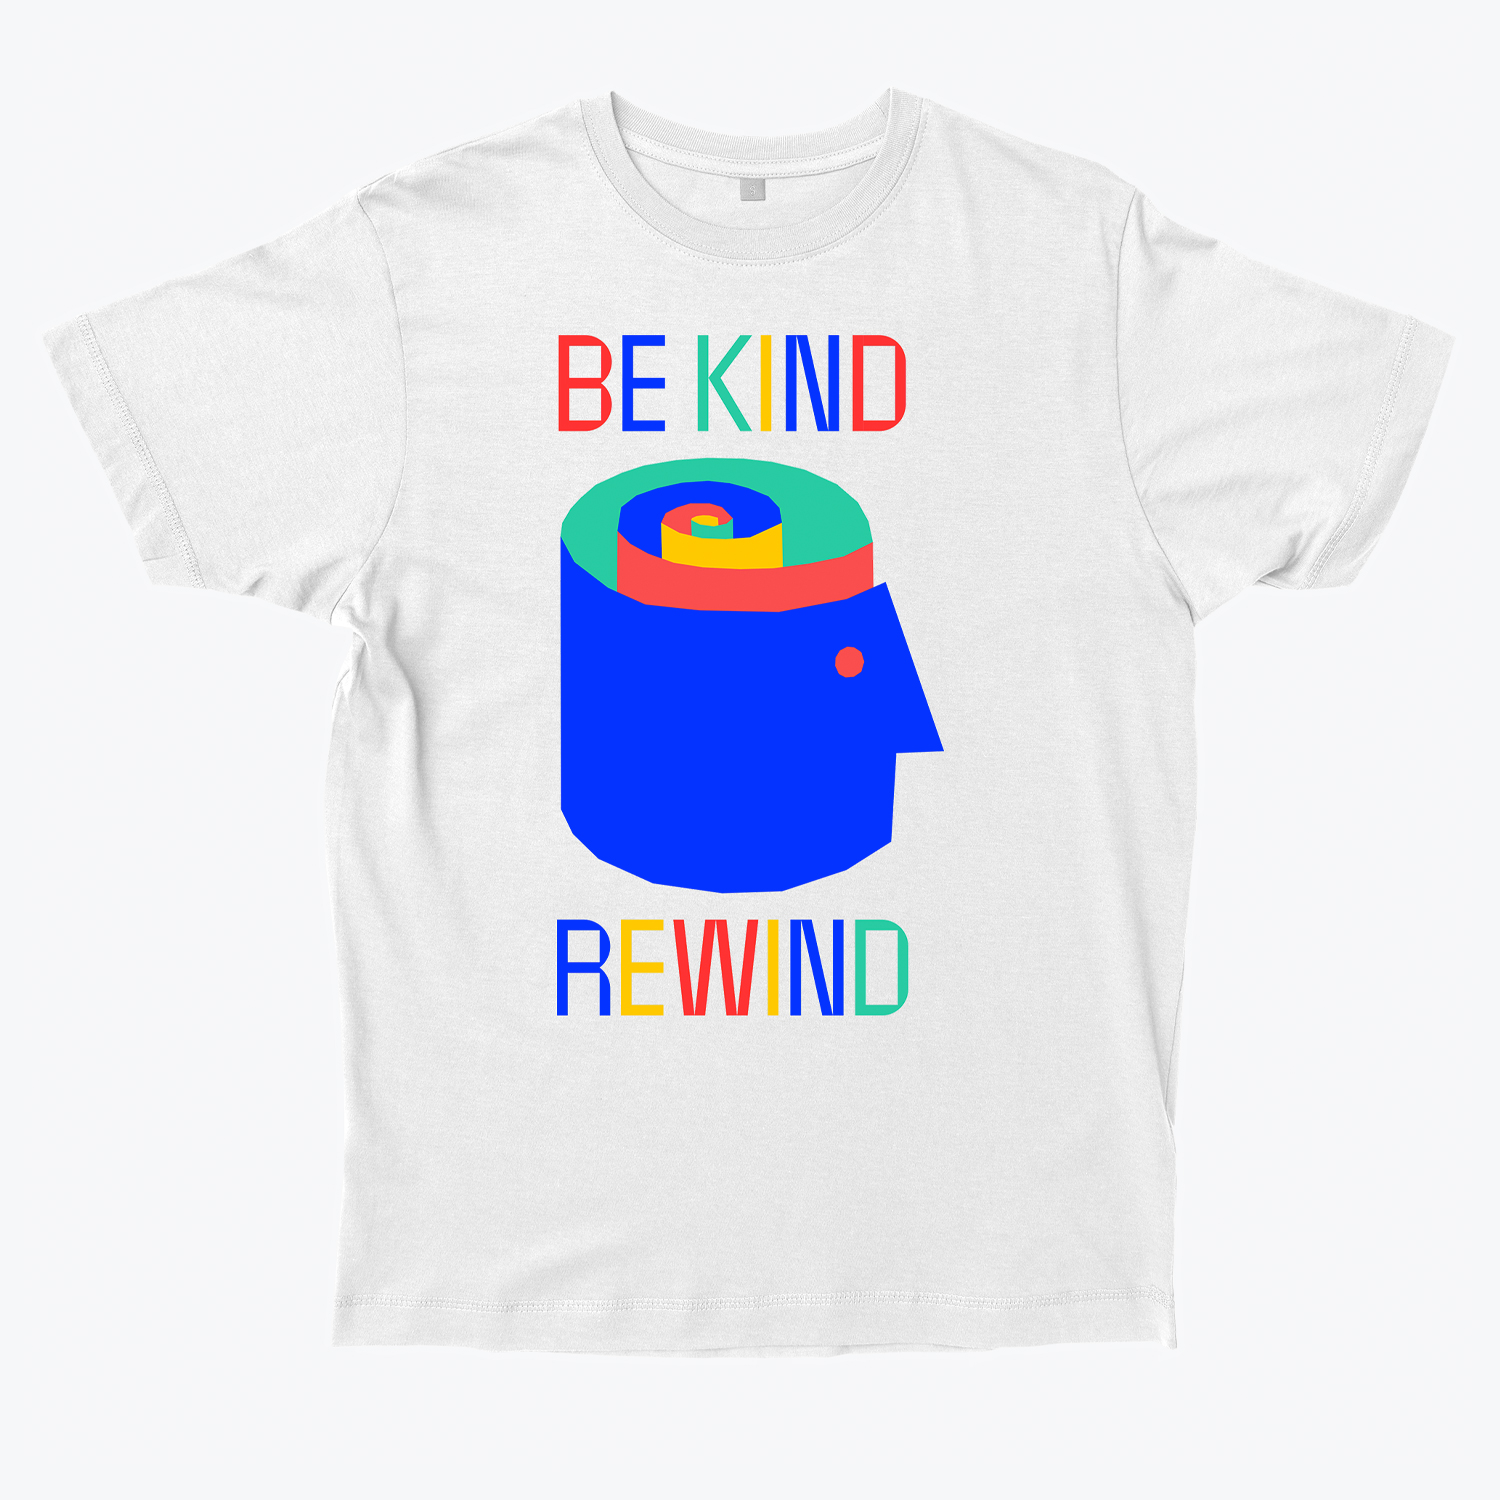 Sebastian König's 'Be Kind Rewind' T-shirt